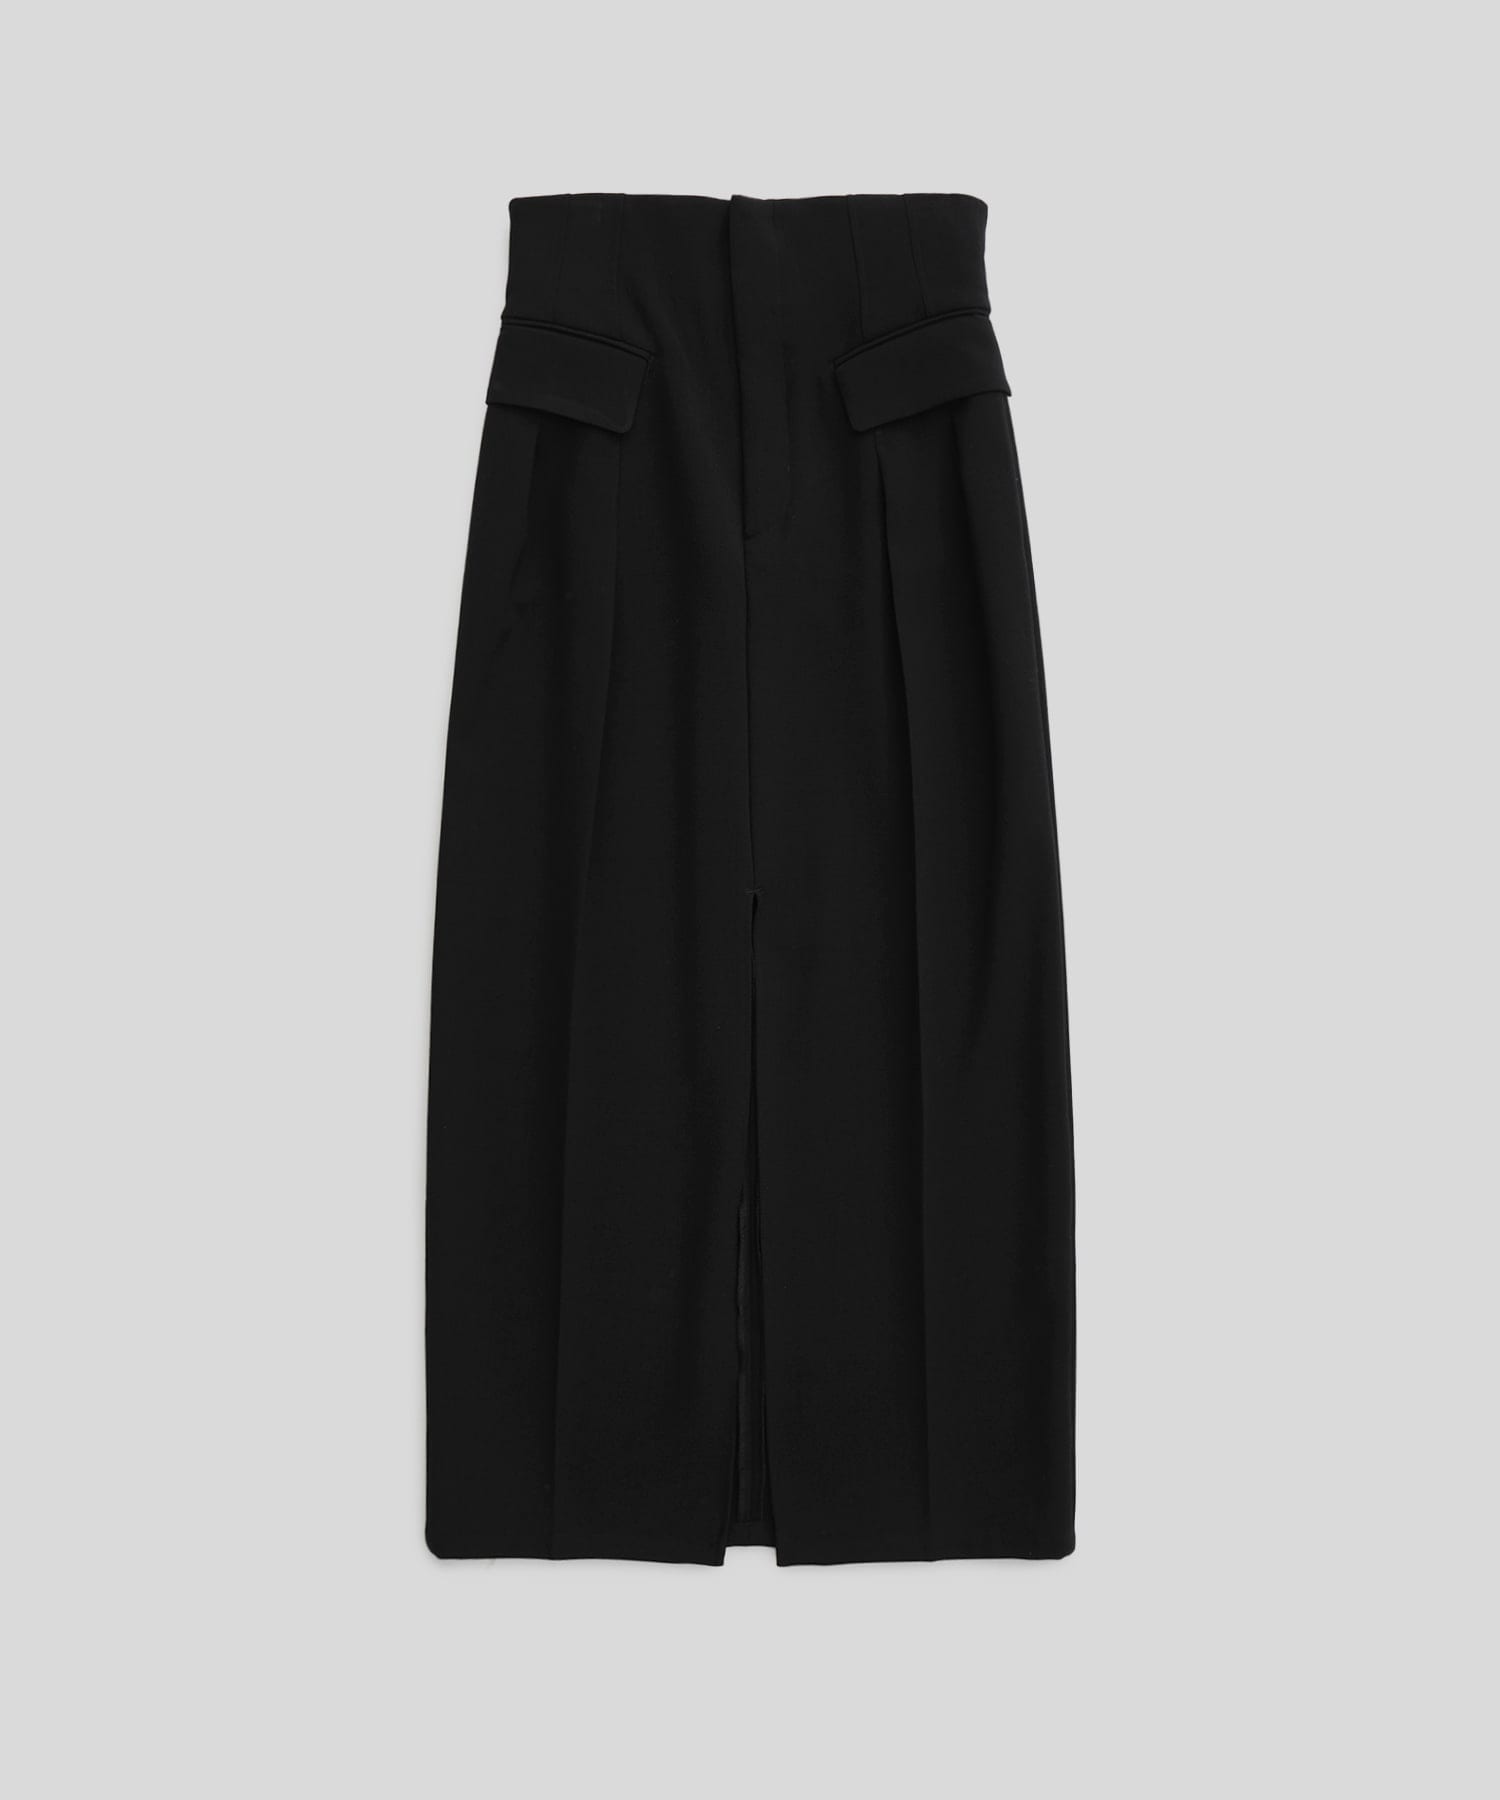 High Waist Tailored Skirt